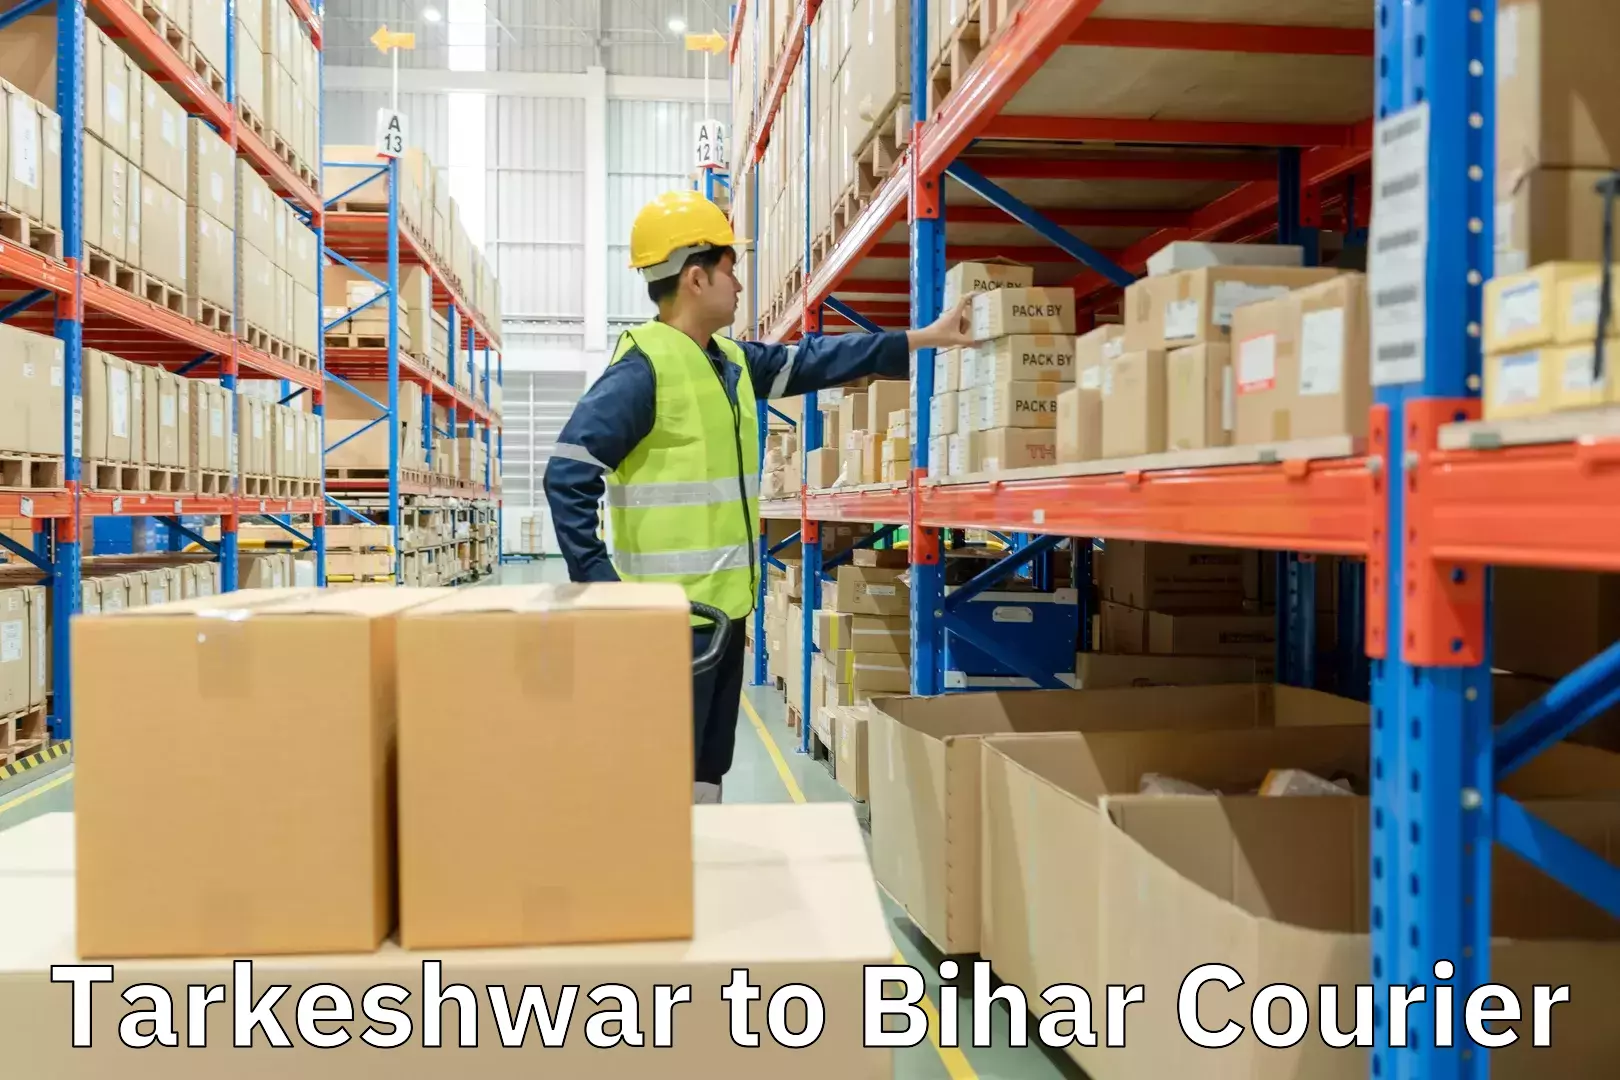 Affordable parcel service Tarkeshwar to Bihar